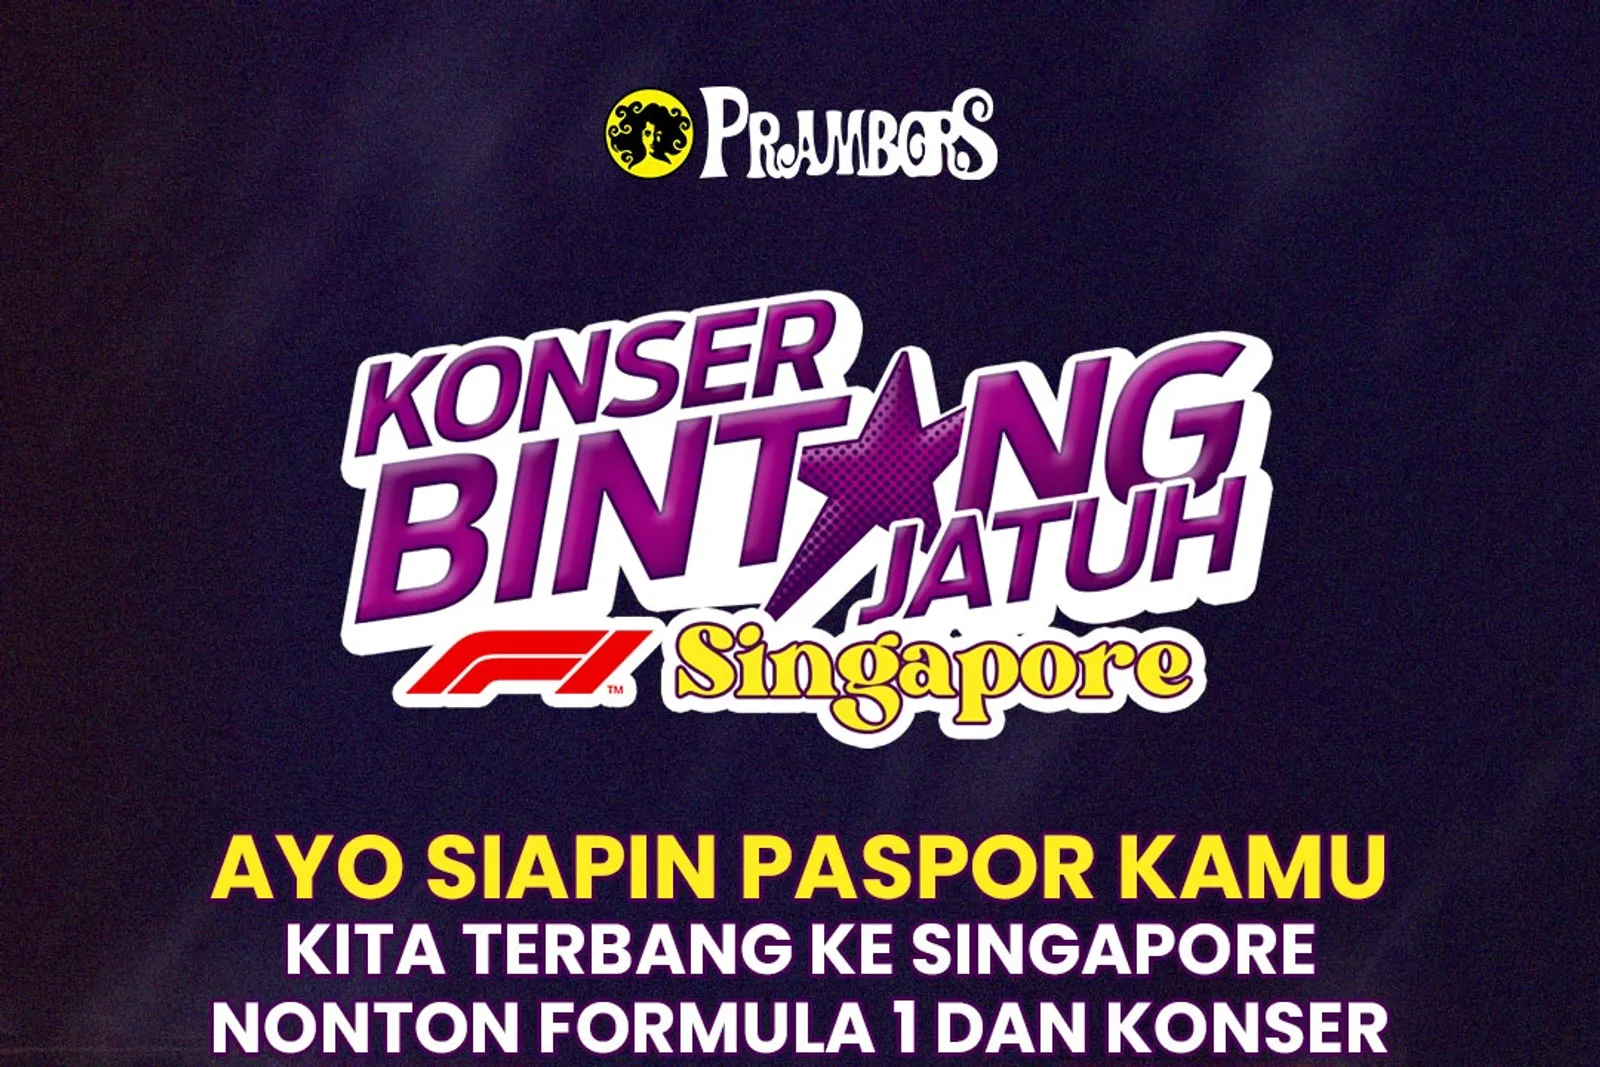 Prambors Konser Bintang Jatuh is Back! Ajak Kamu ke Singapura Gratis